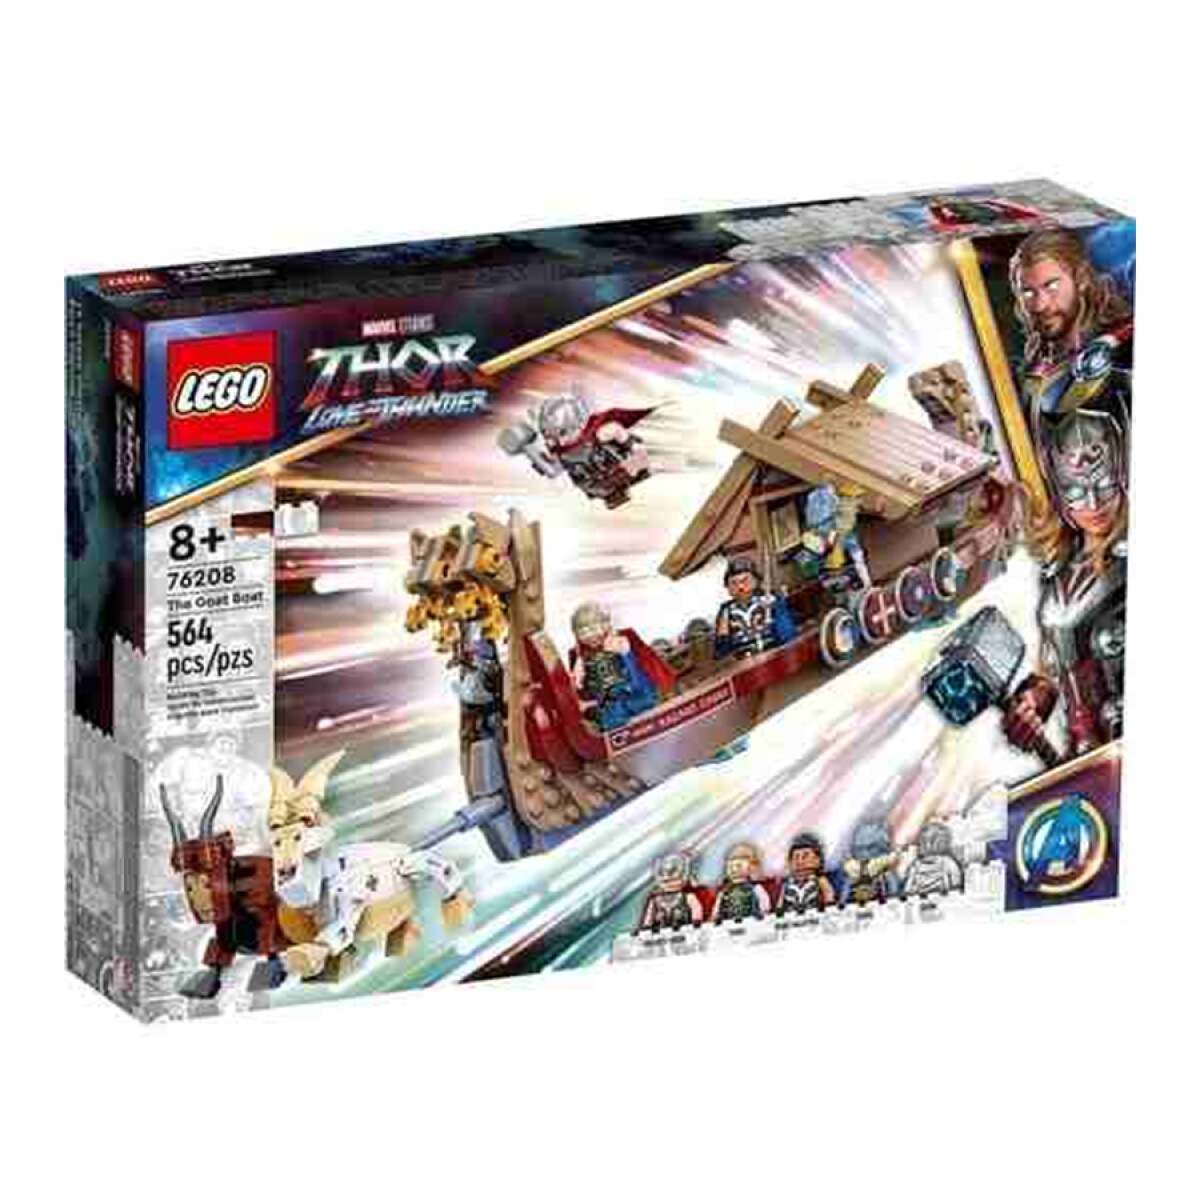 Lego Thor Love and Thunder - Goat Boat 564 PCS 